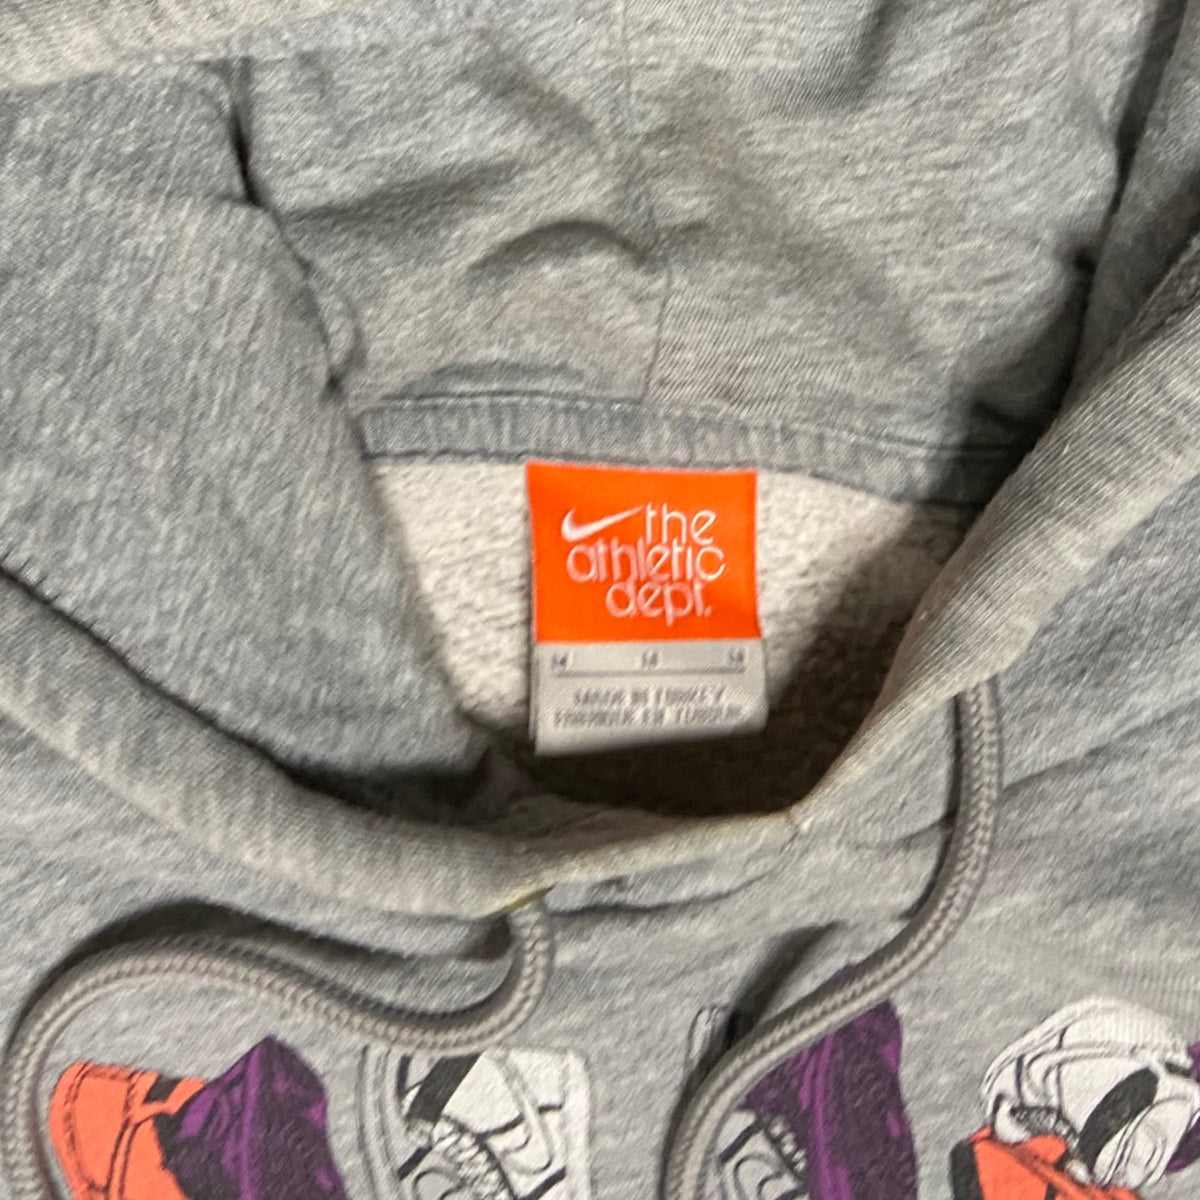 Nike hoodie - M